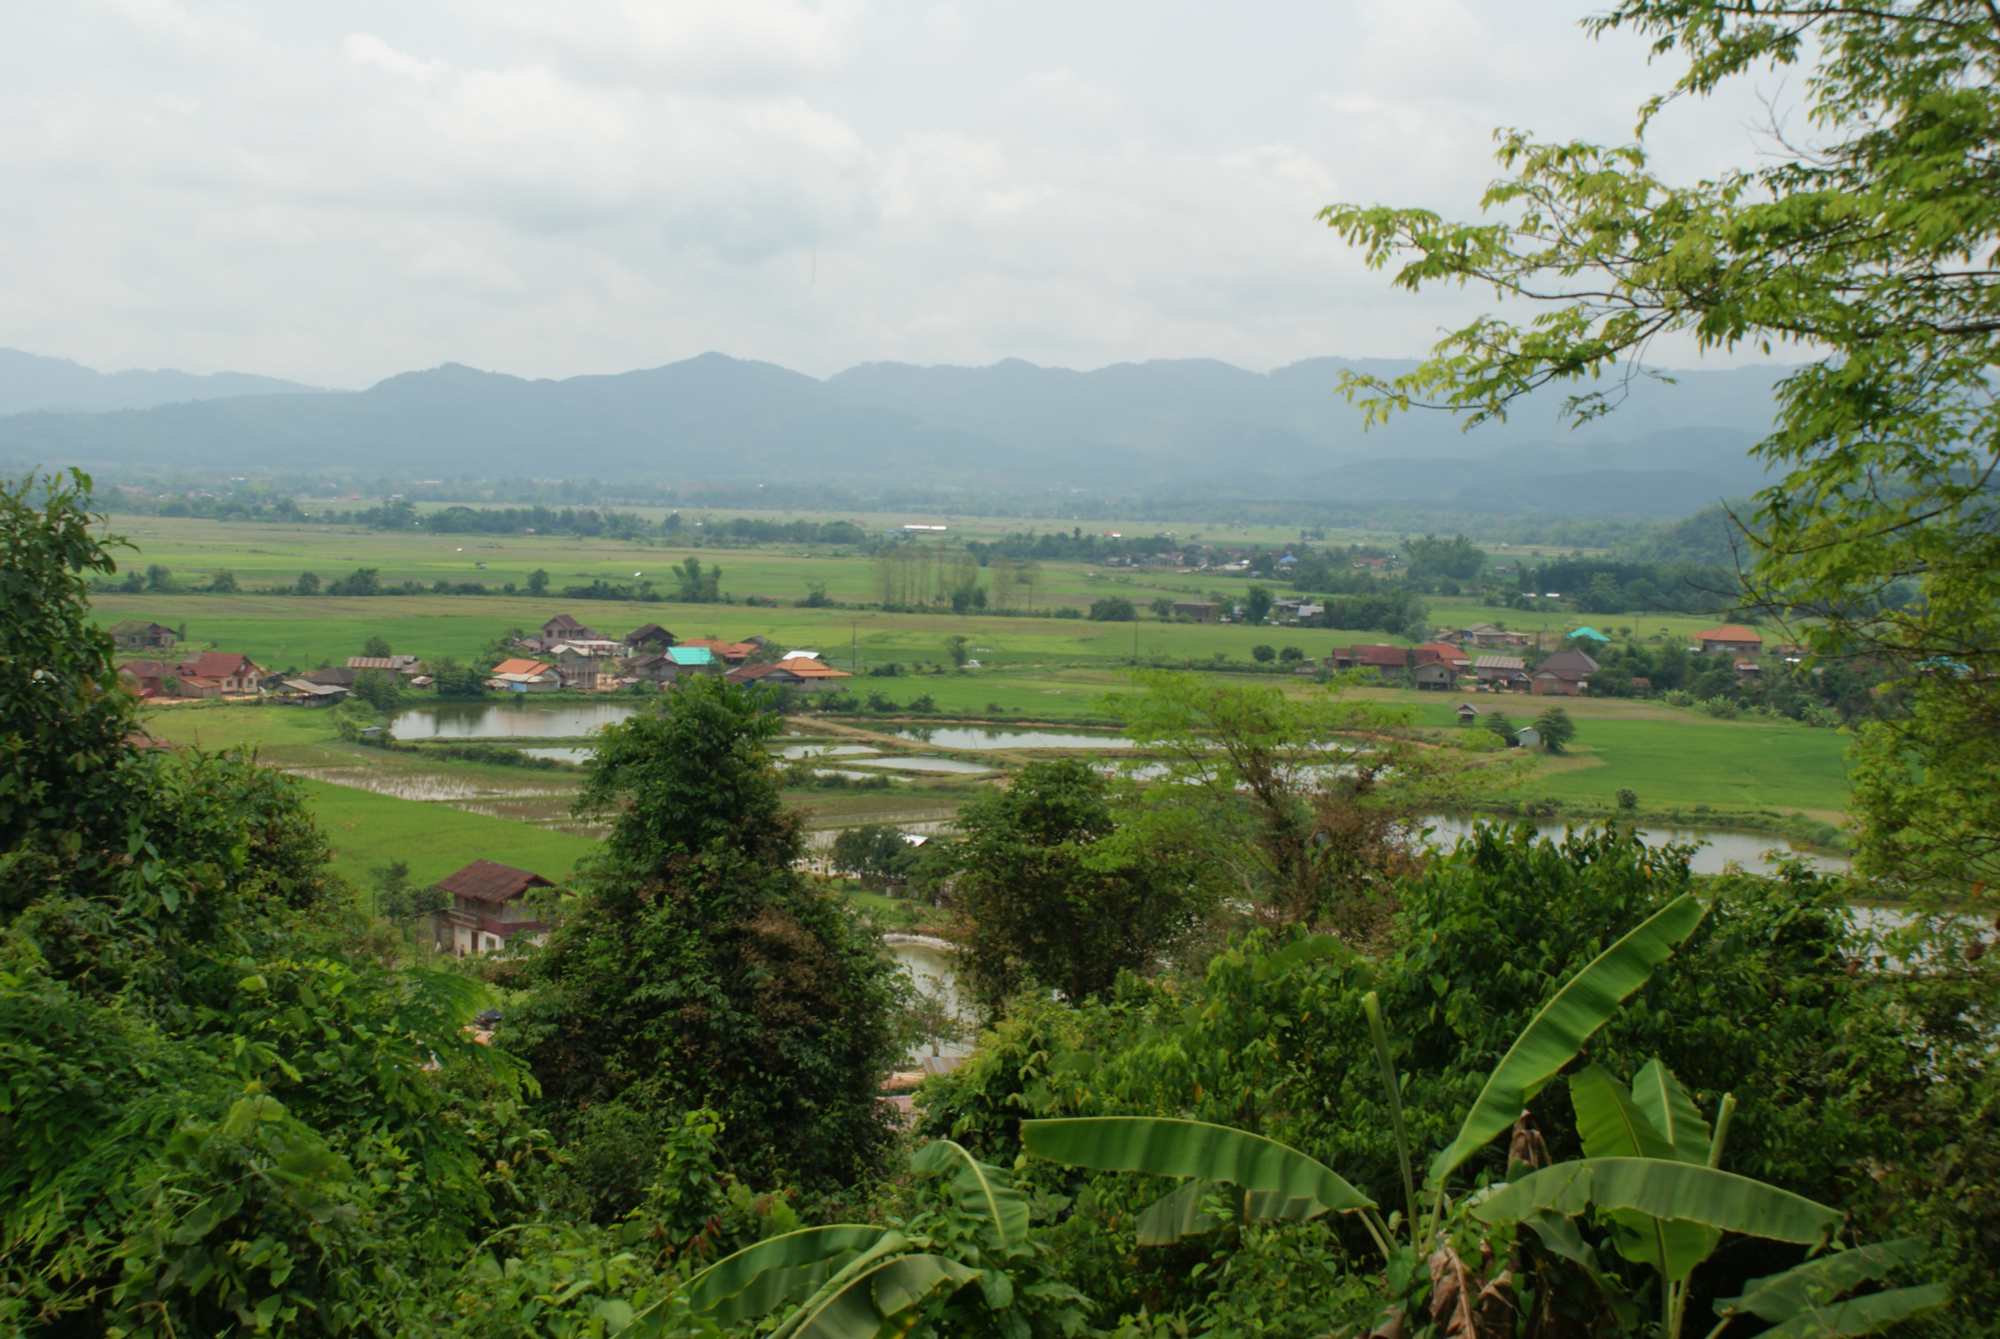 Fields around Luang Namtha